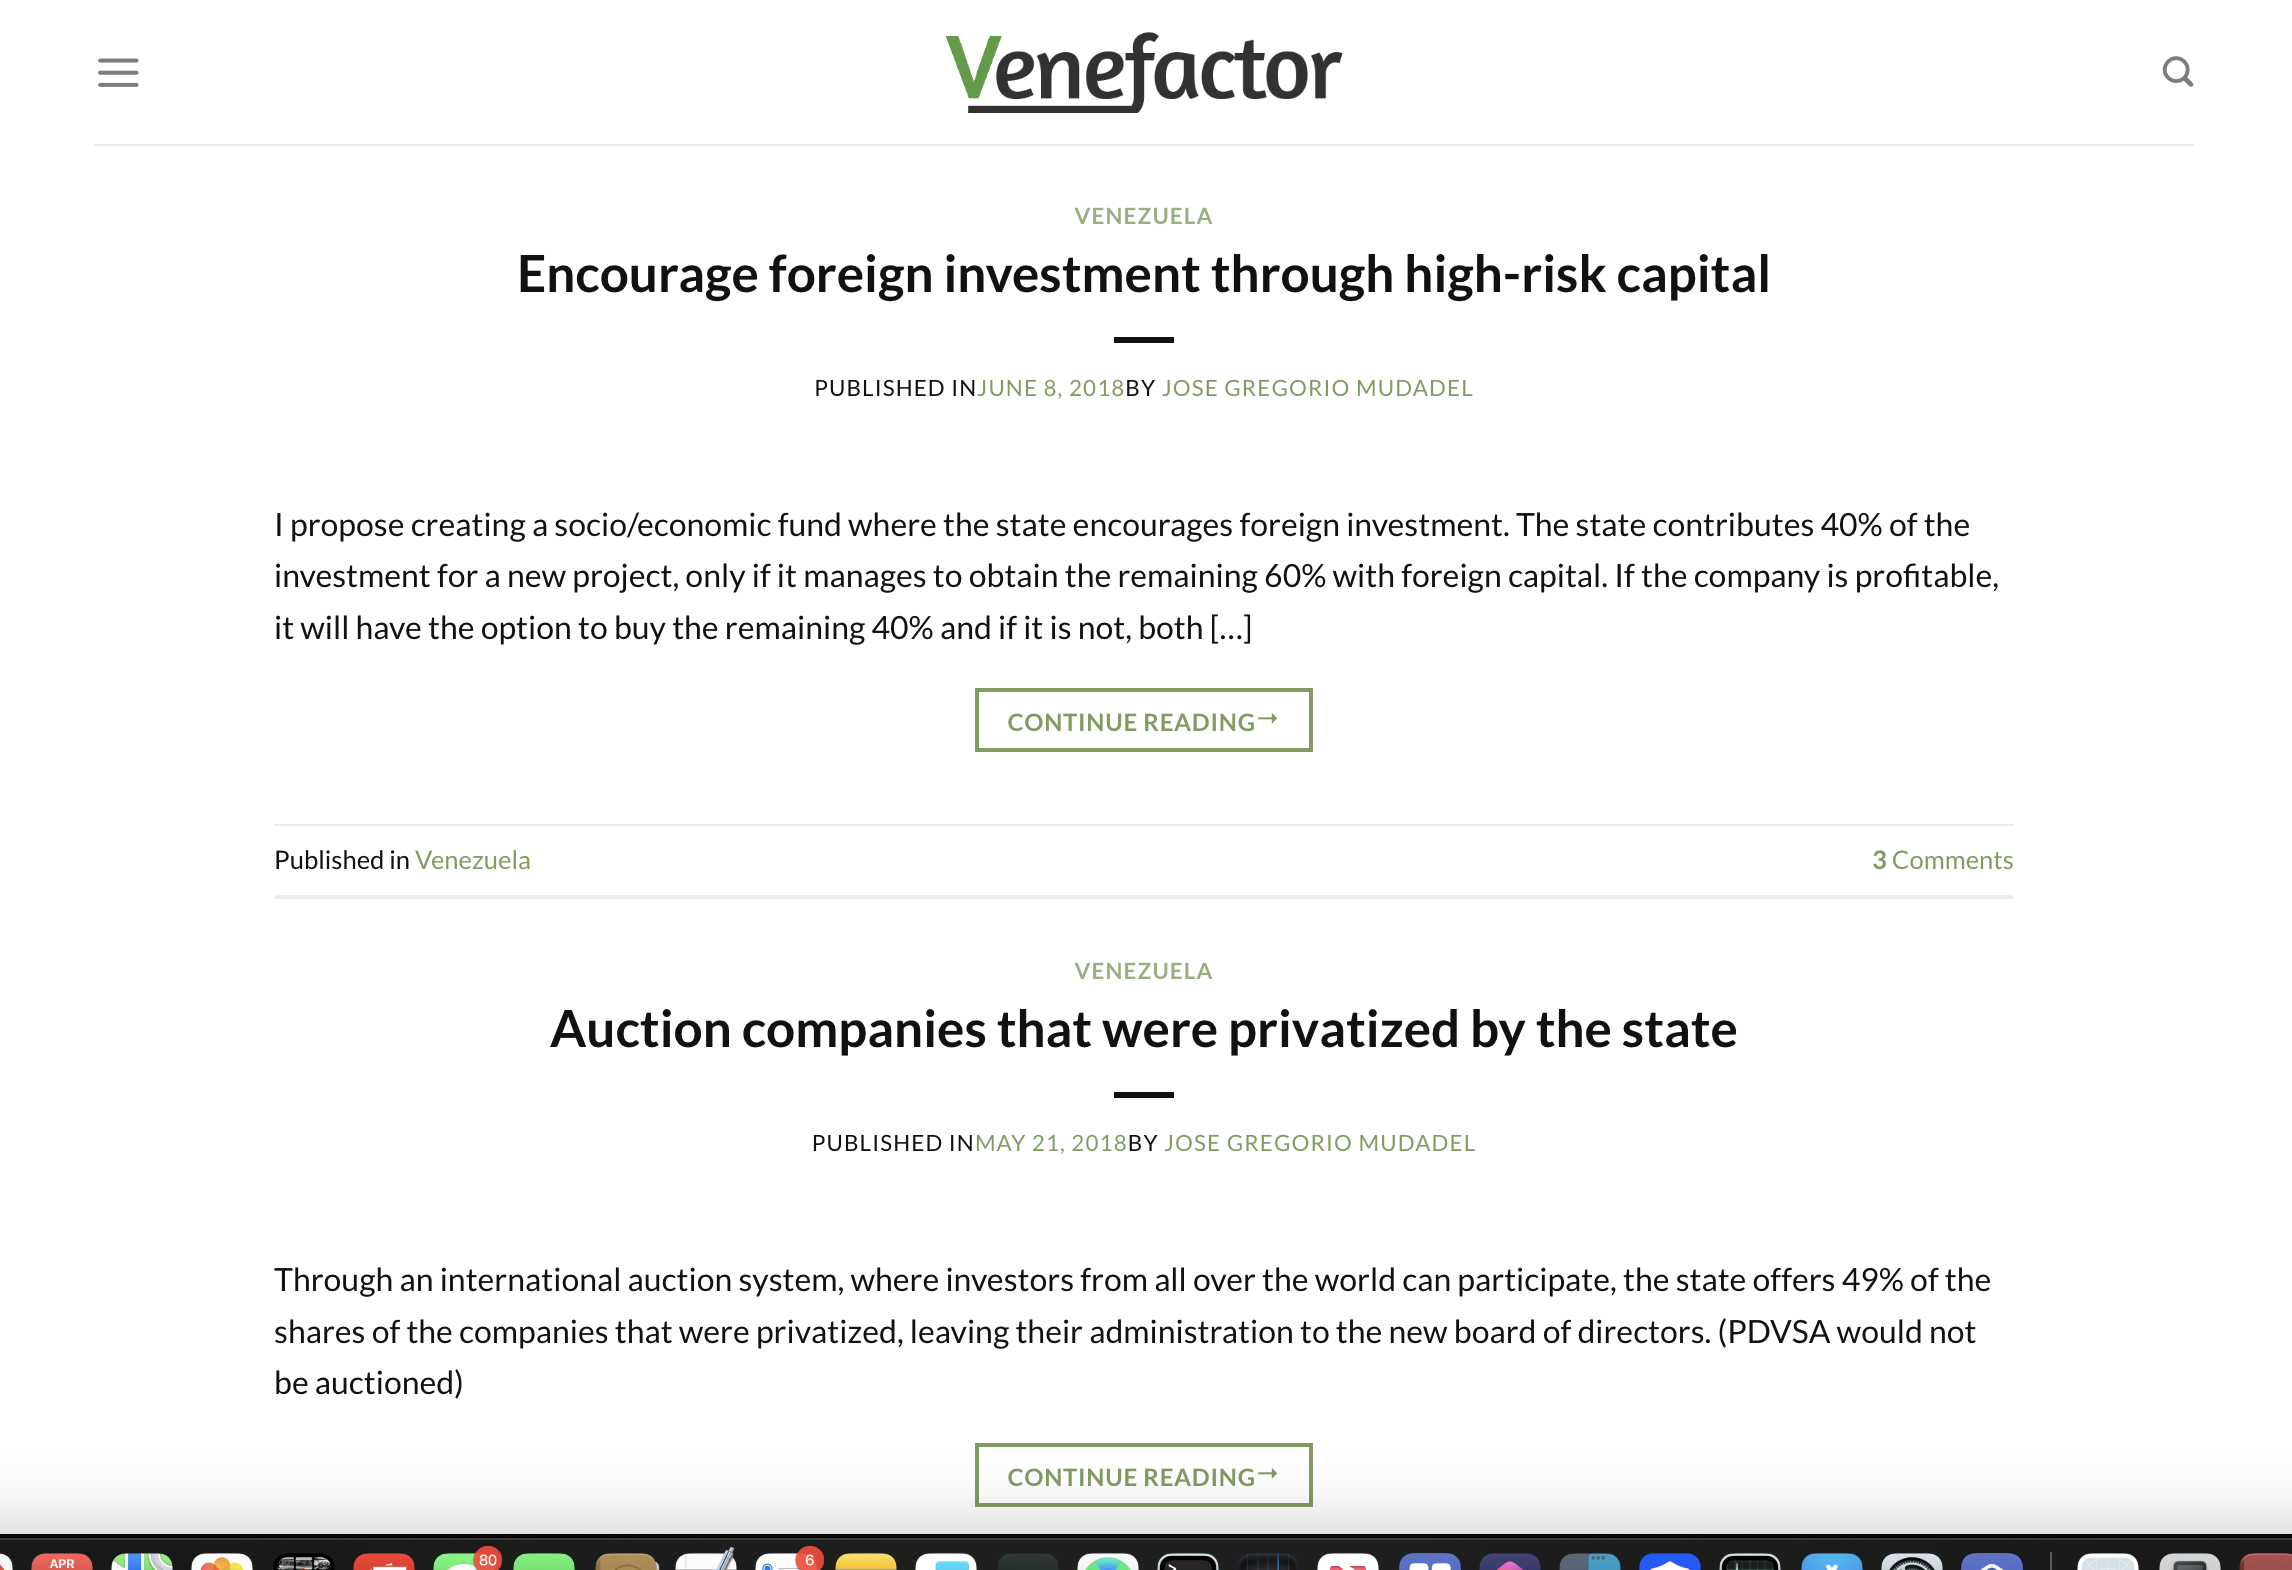 Venefactor.com investment scam